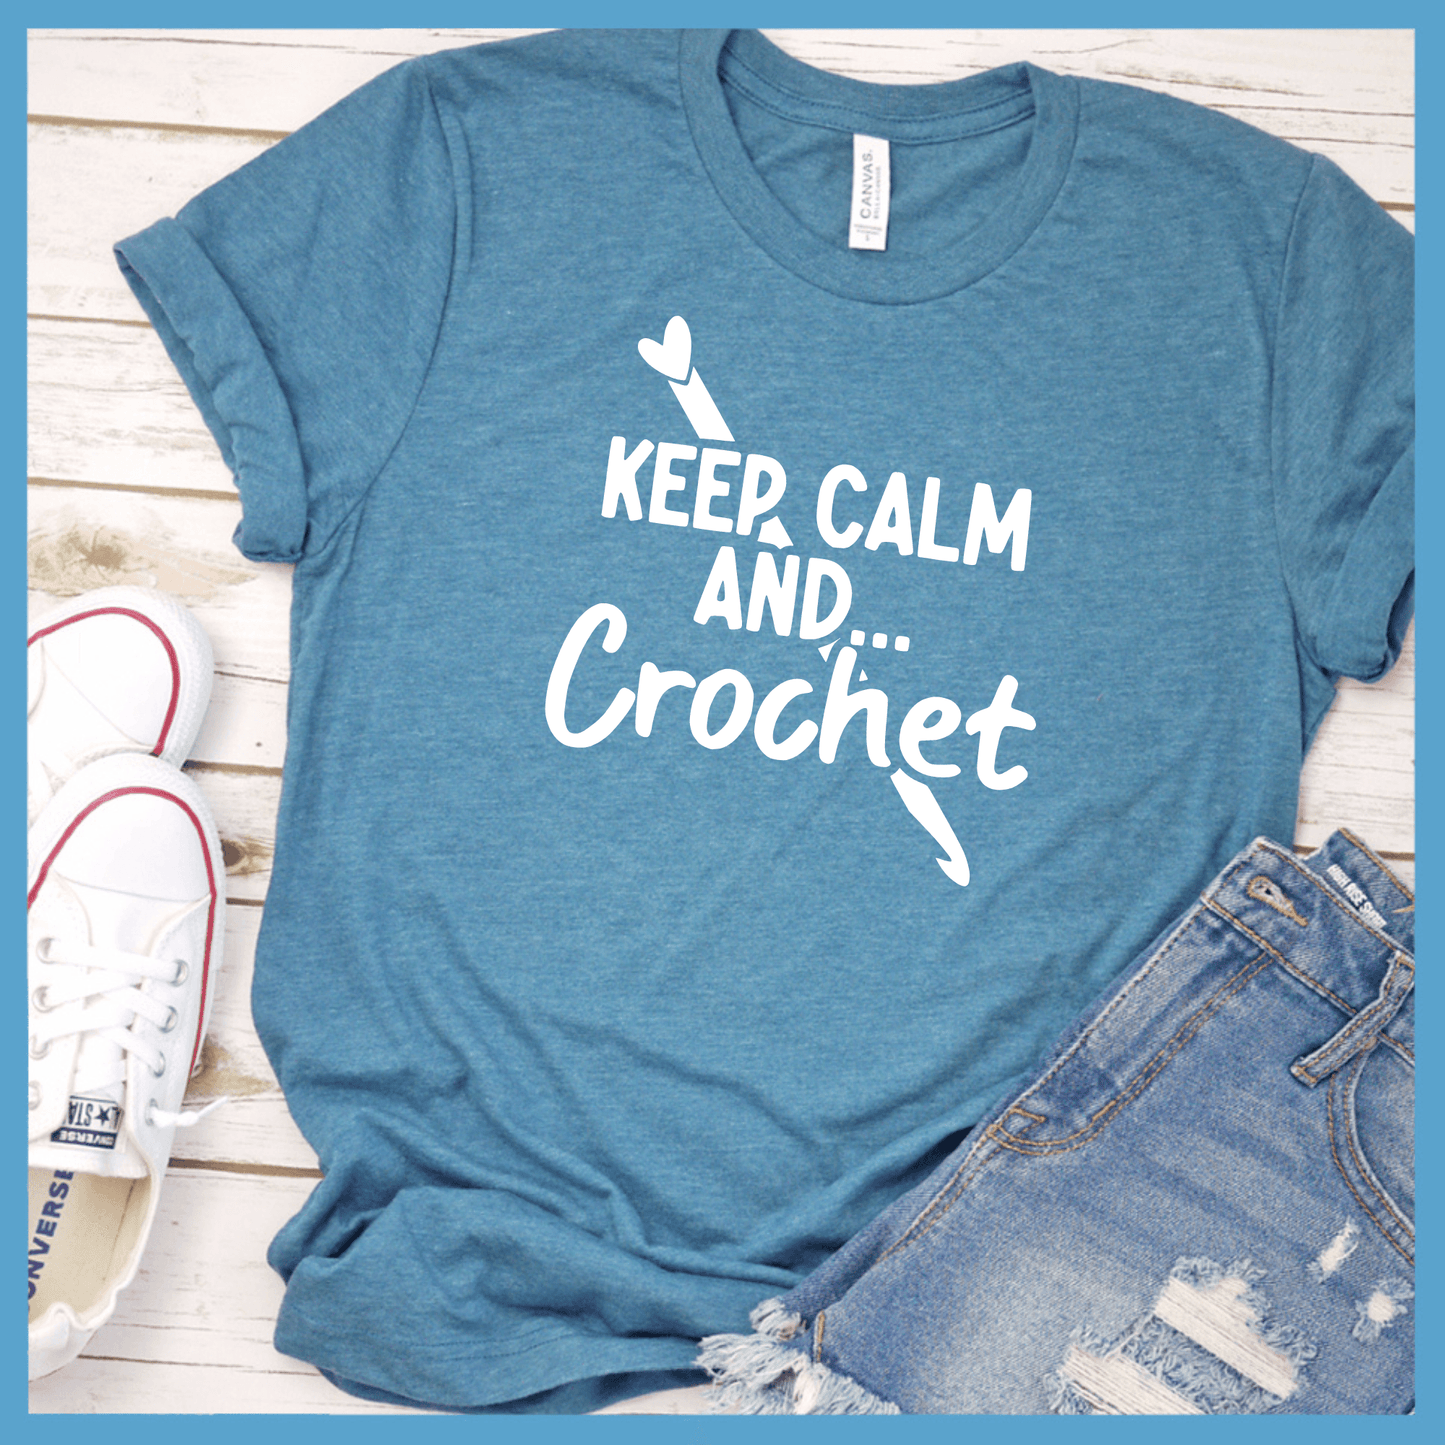 Keep Calm and Crochet T-Shirt